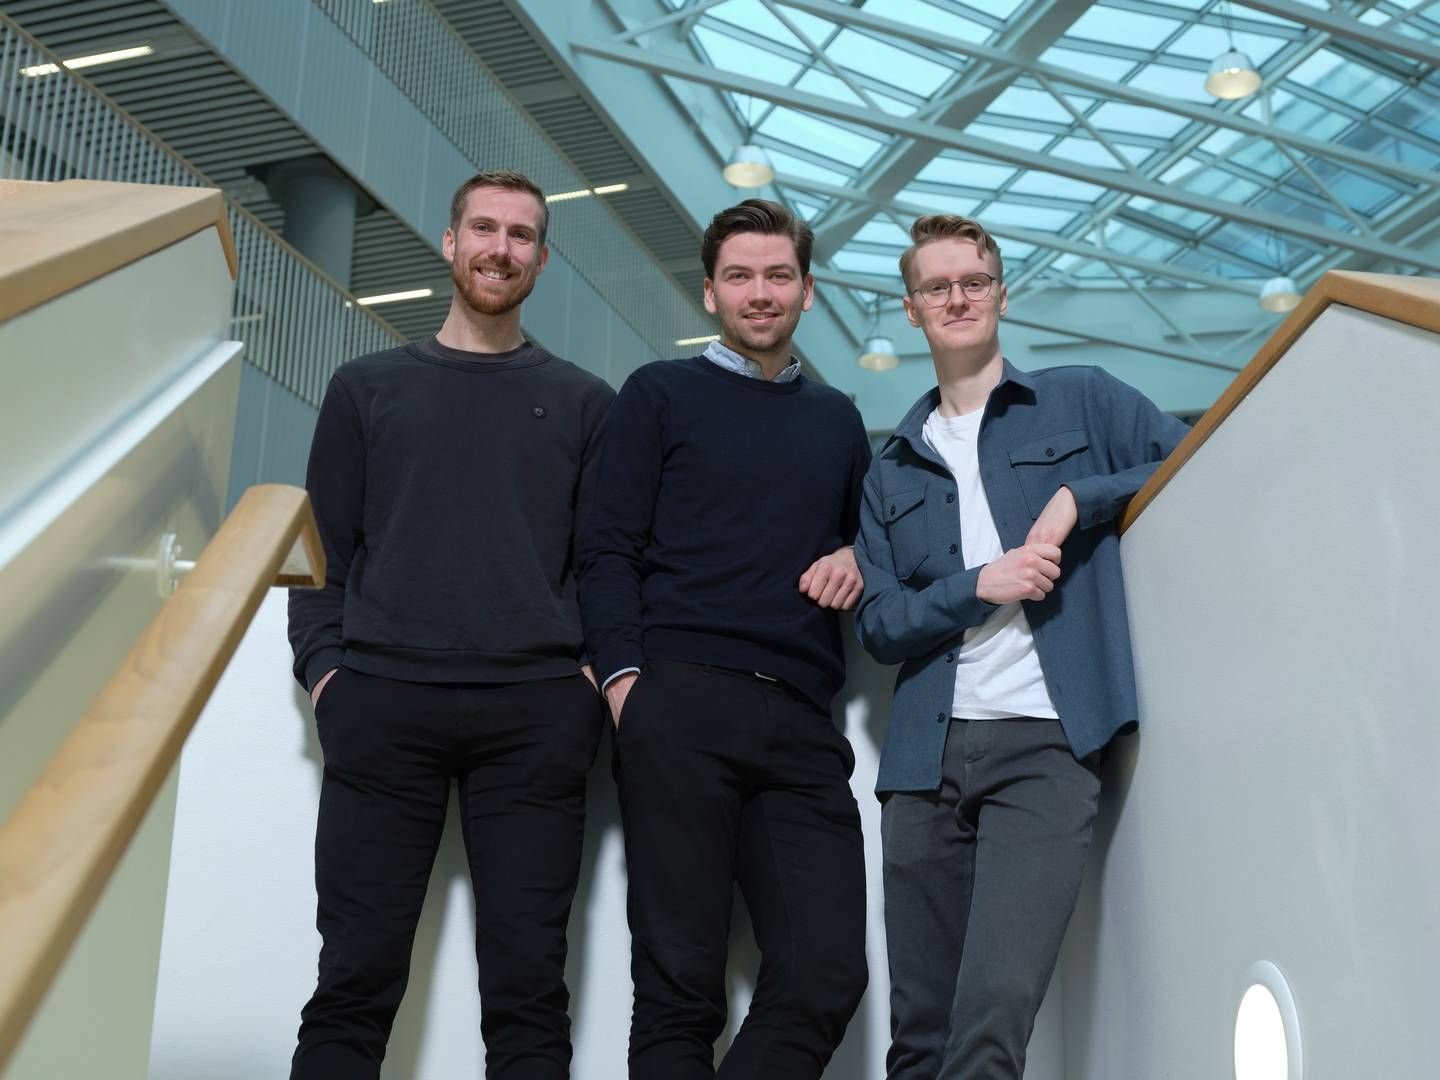 Formalize-holdet: Fra venstre Jacob Lilholm, Kristofer Abell og Magnus Boje. | Foto: Formalize